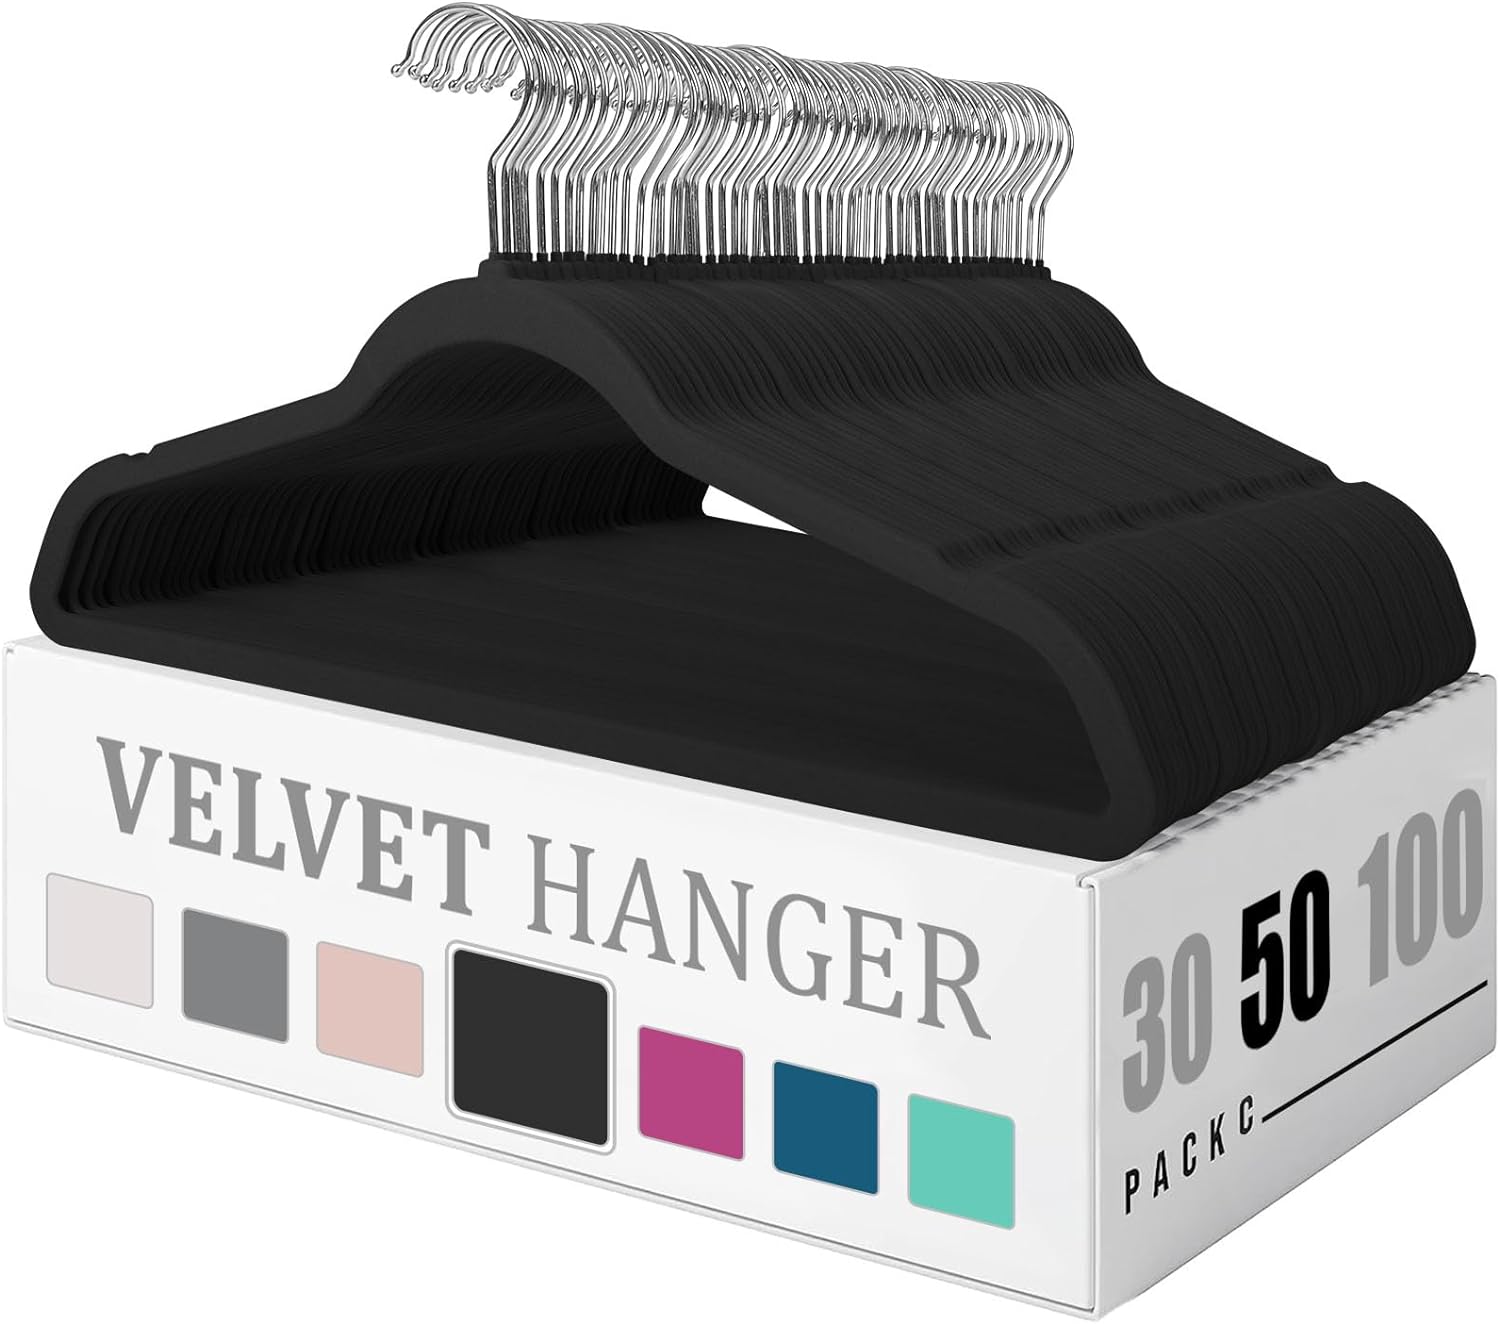 Better Homes & Gardens Velvet Clothing Hangers, 100 Pack, Black, Non-Slip,  Space Saving